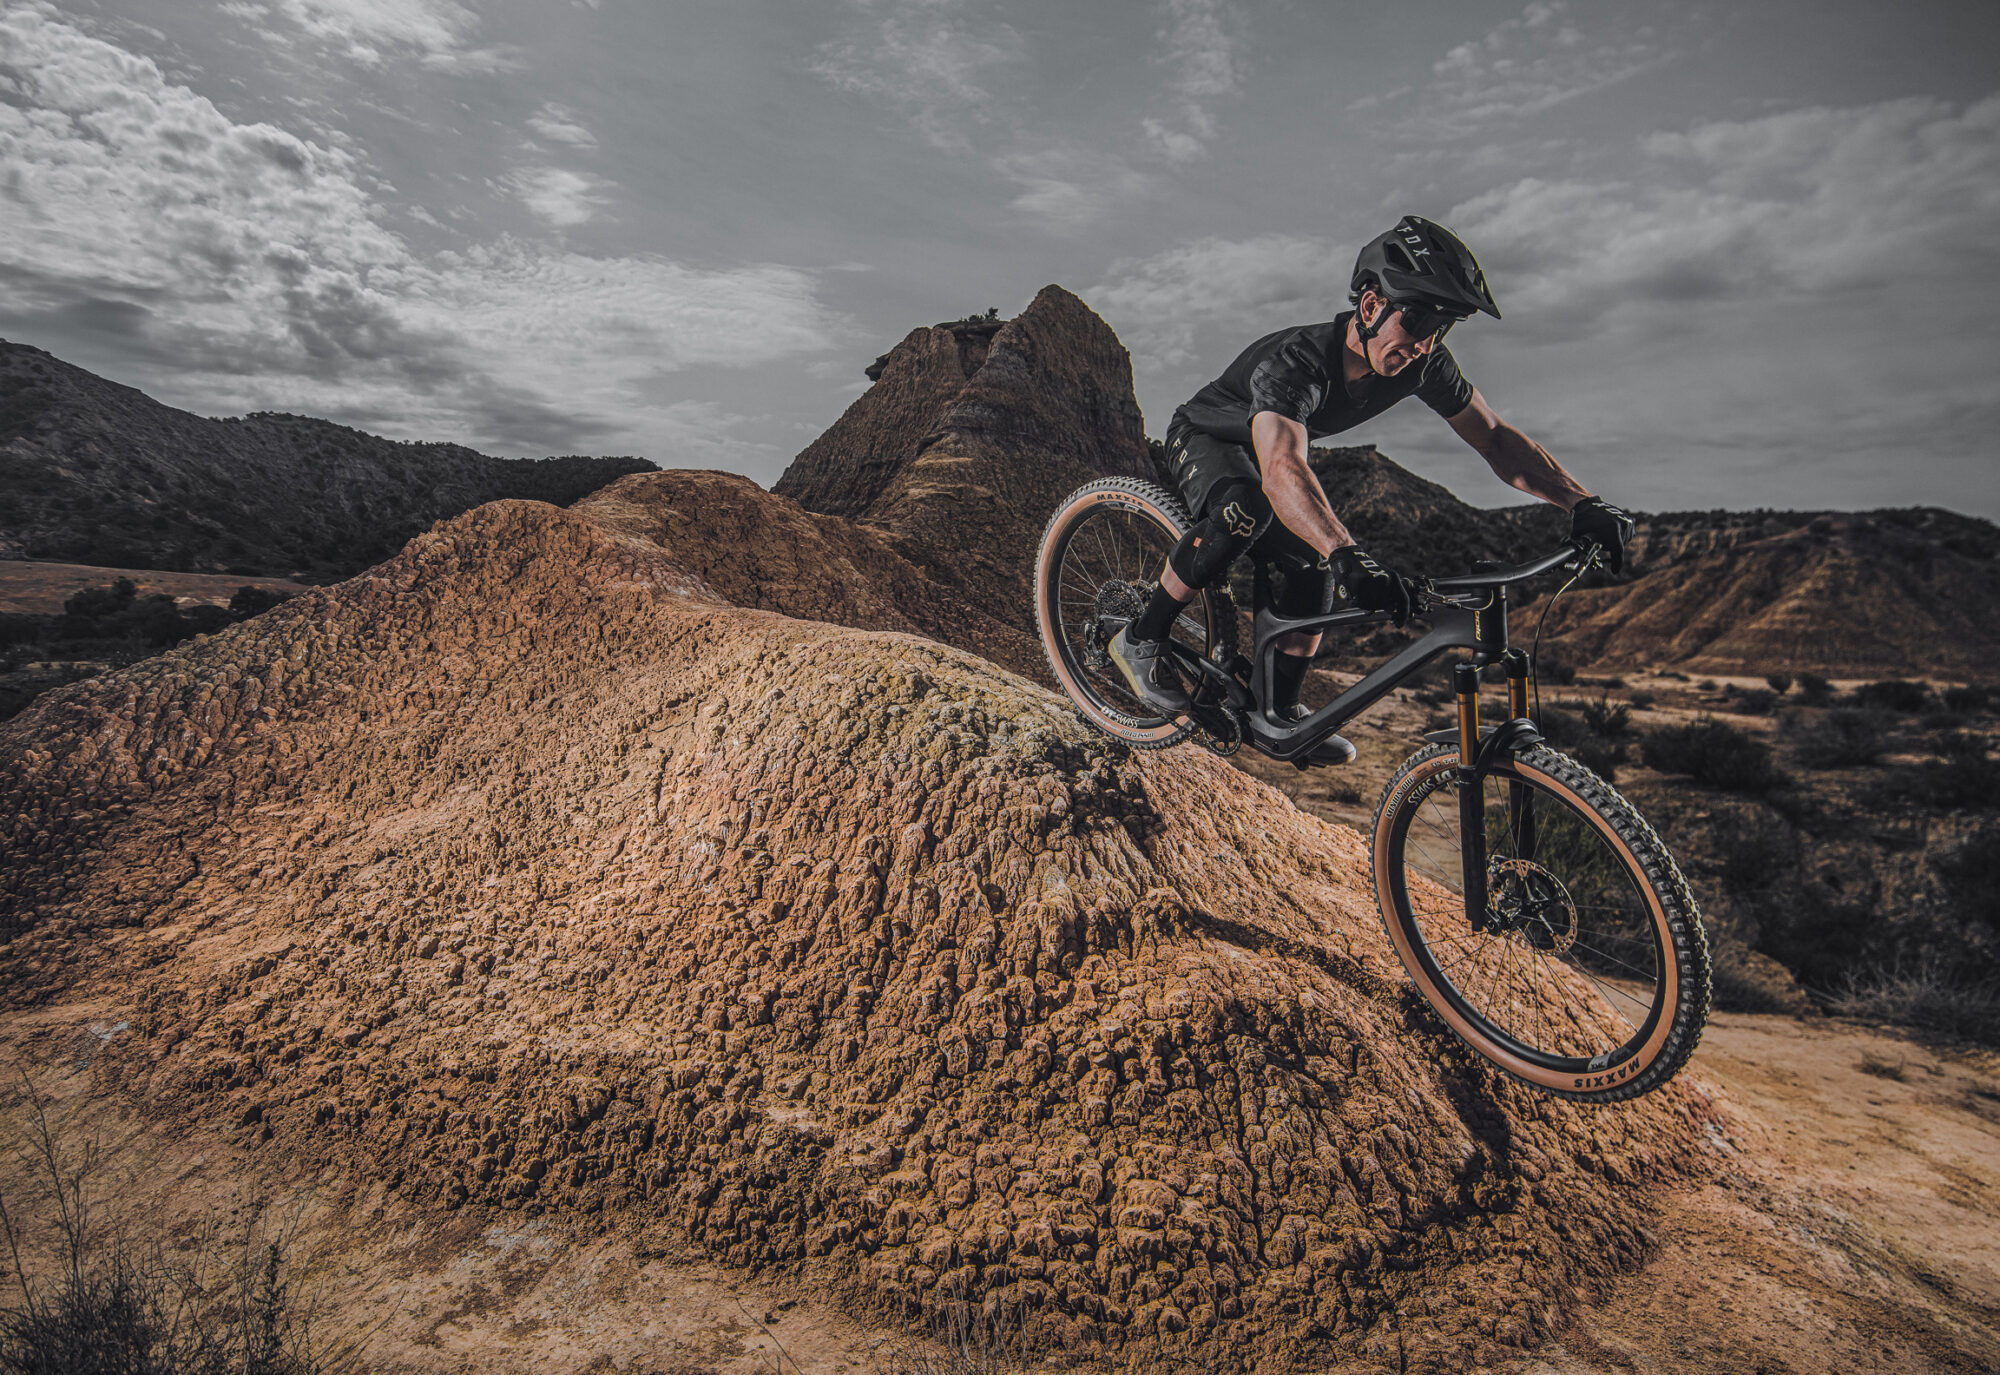 Biker fährt über braunen Dirt-Hügel in steiniger Landschaft